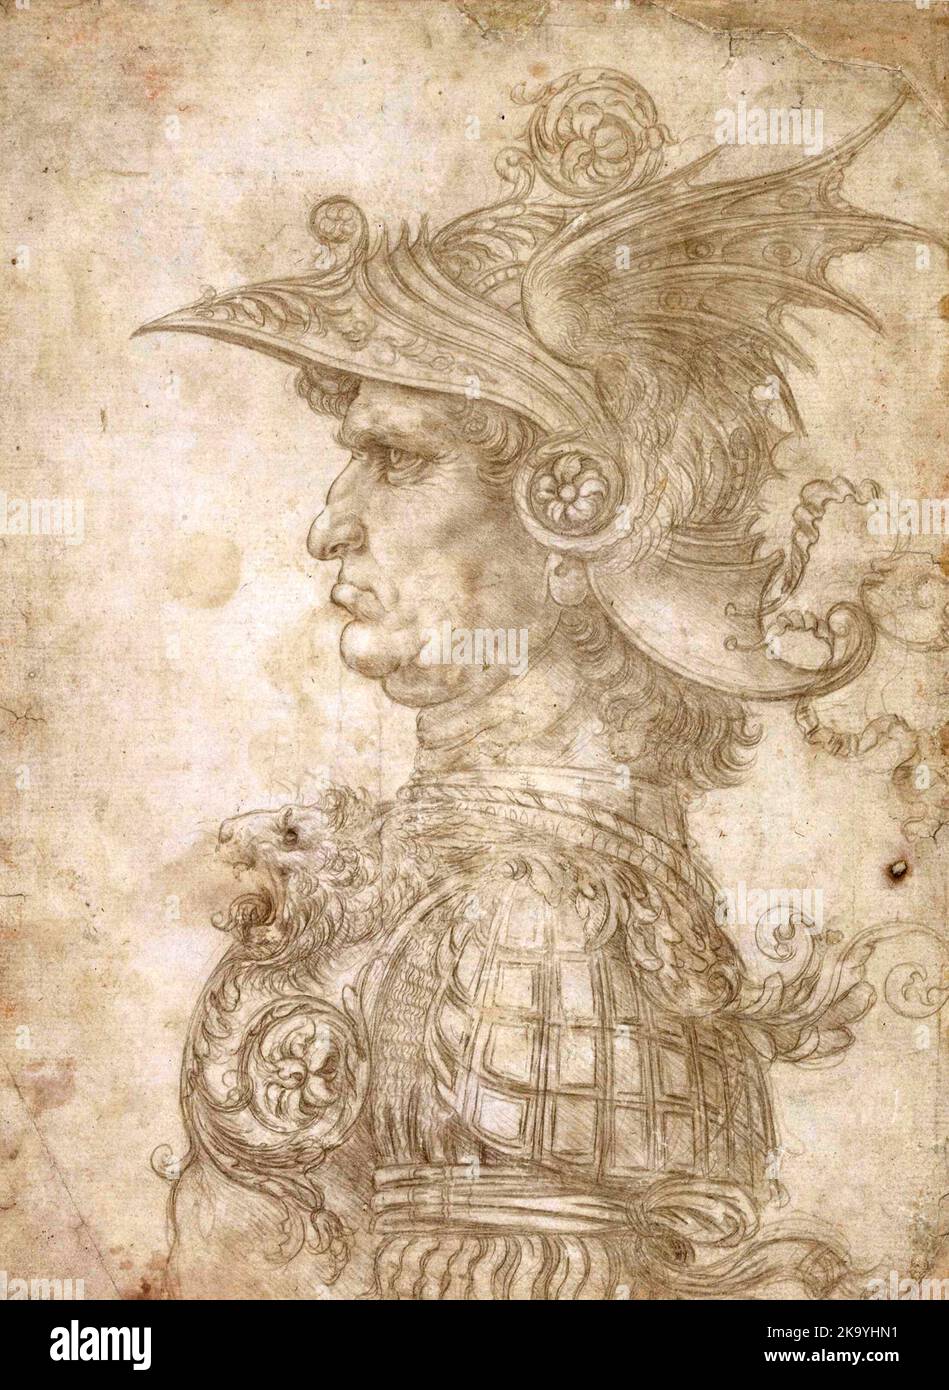 Antiguo guerrero de perfil, 1472. Ilustración de Leonardo da Vinci Foto de stock